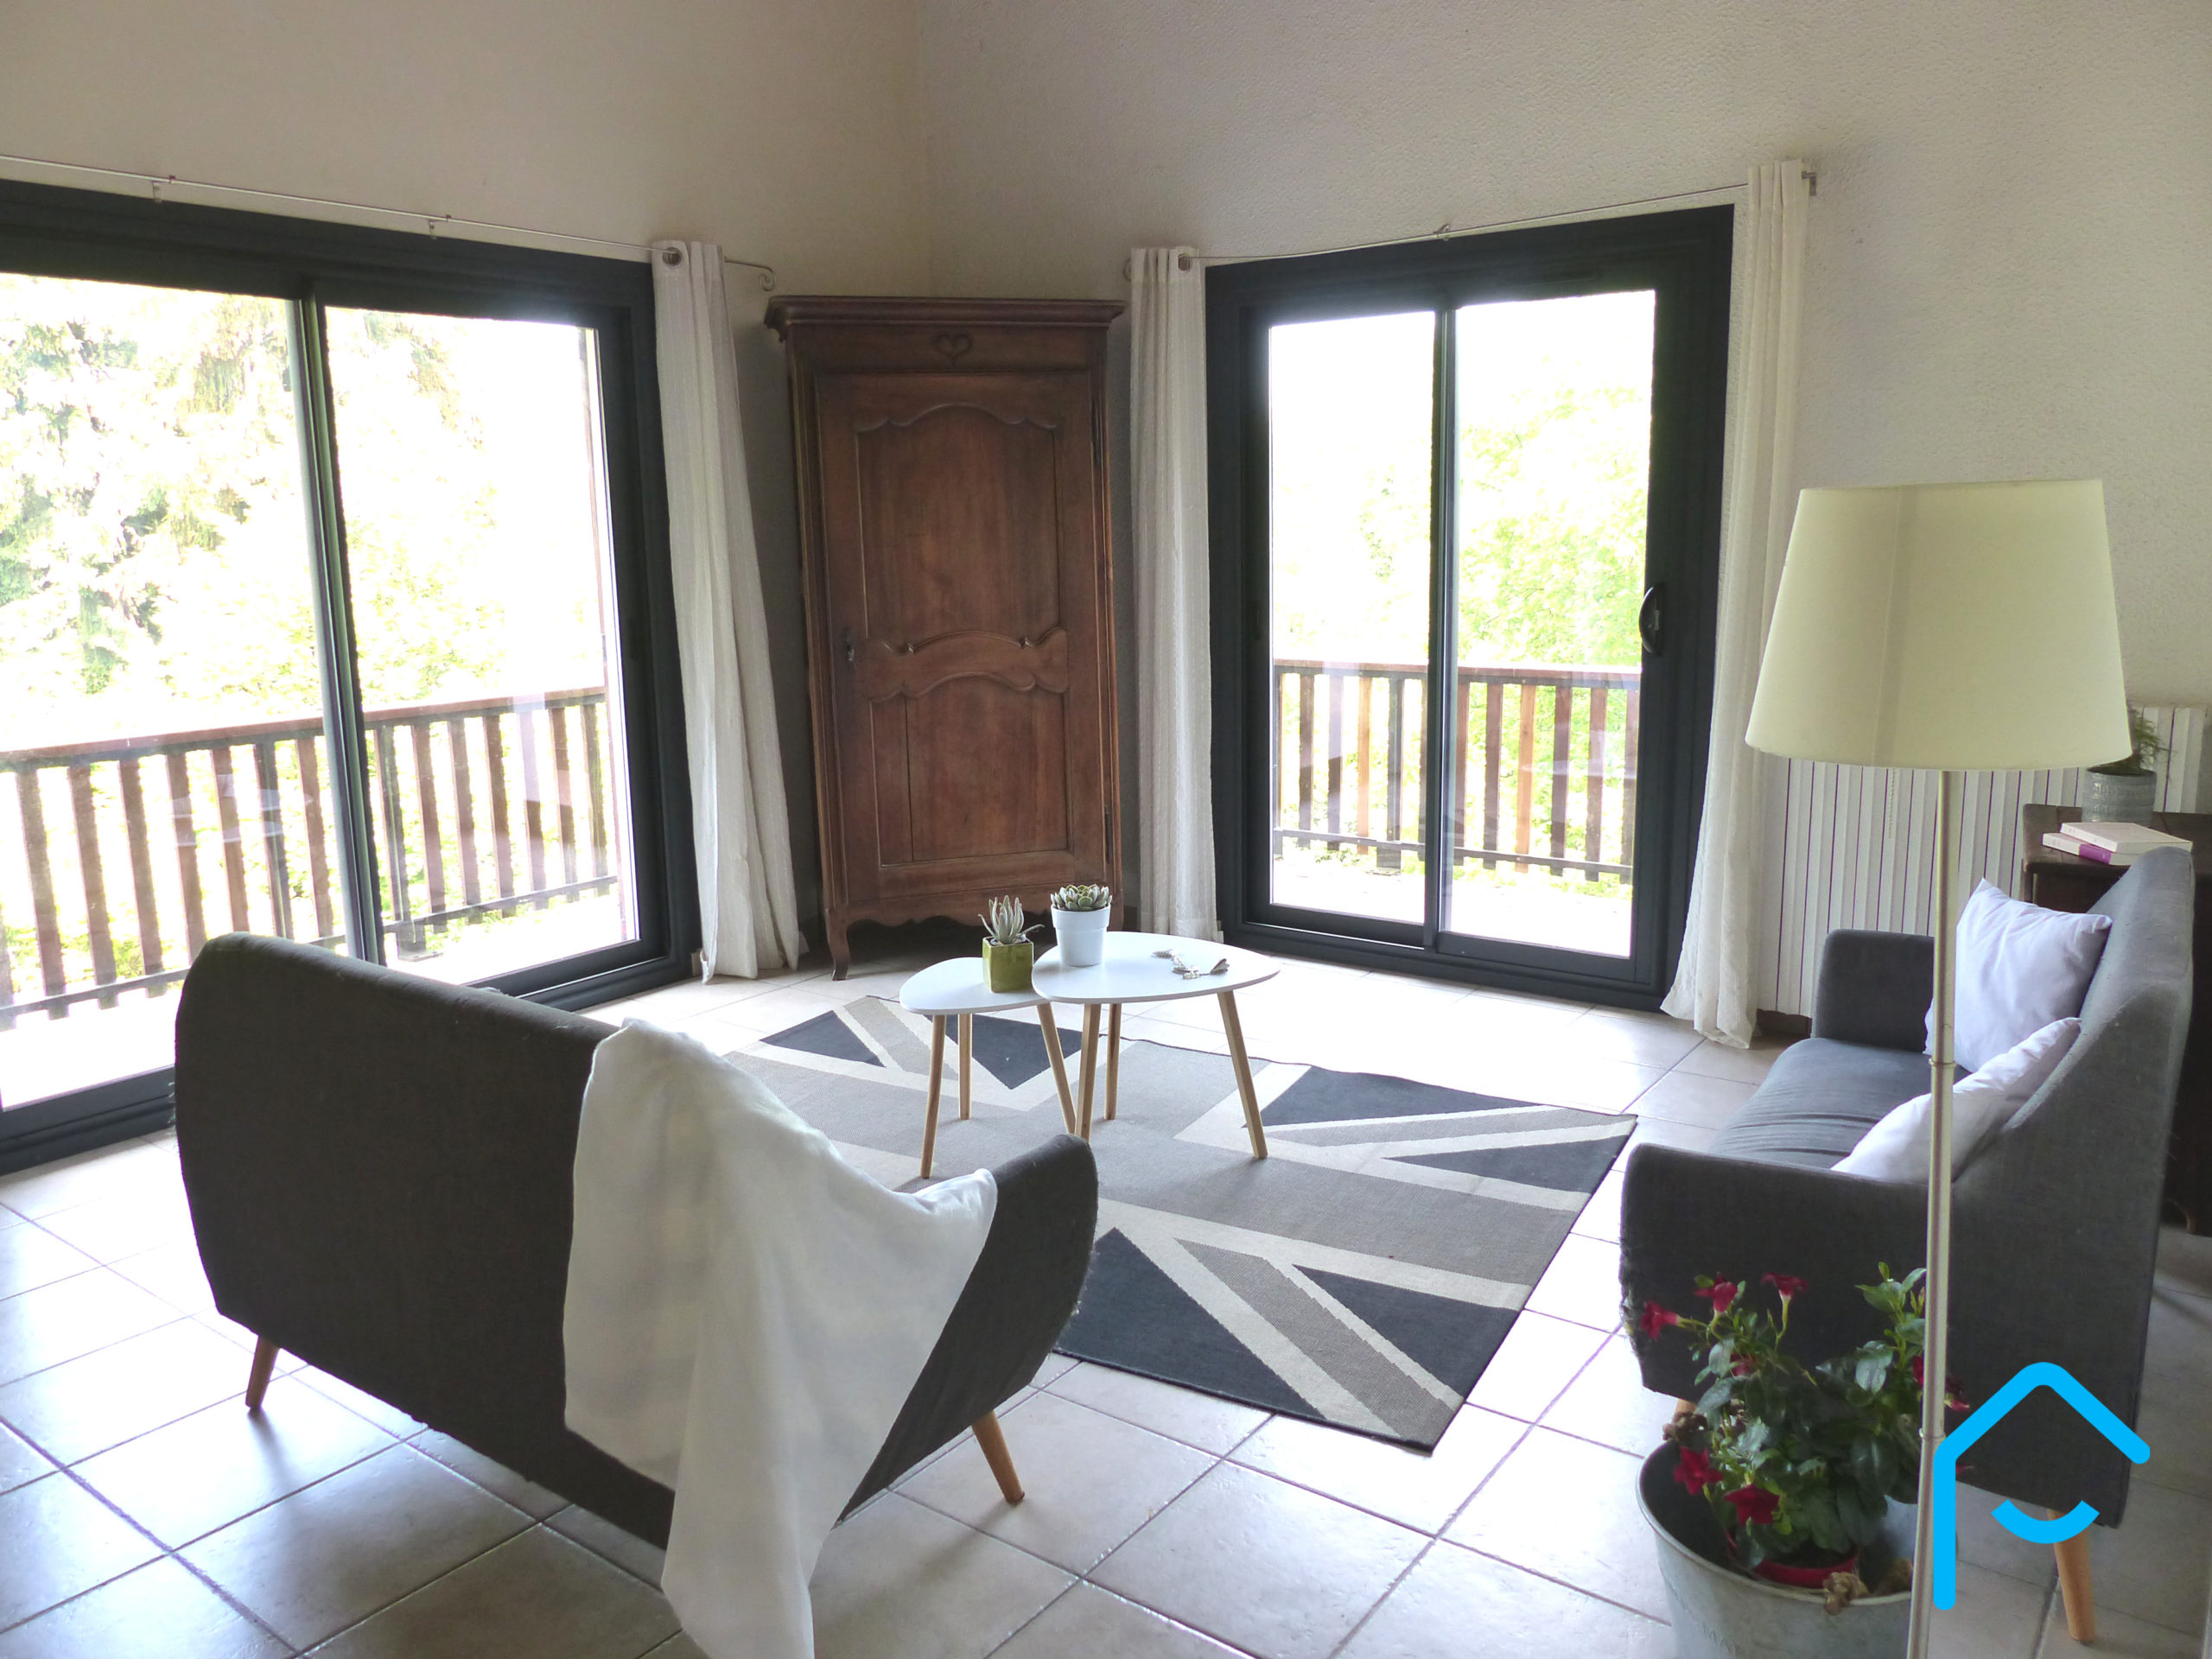 A vendre Savoie Chambéry Jacob-Bellecombette maison individuelle terraini 5 chambres quartier résidentiel rare à la vente vue 12